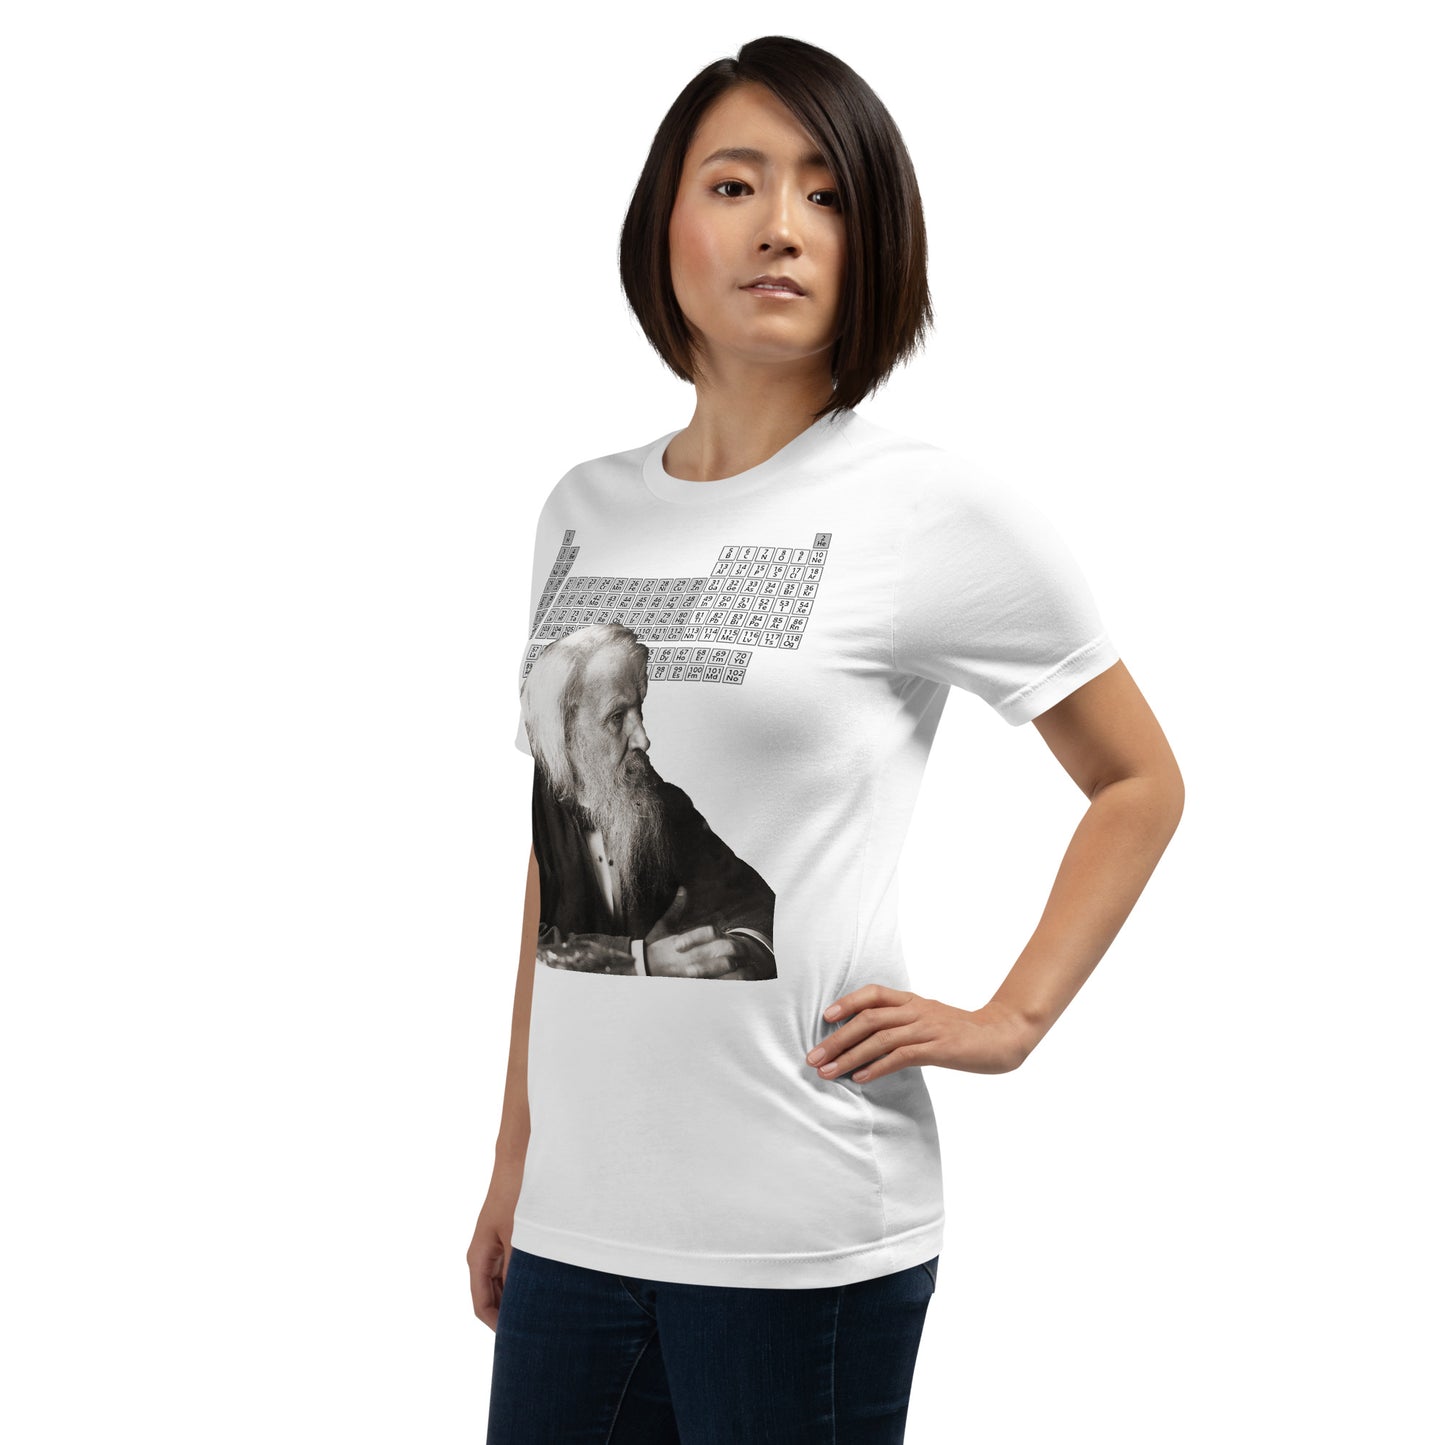 Demitri Mendeleev Unisex T-shirt